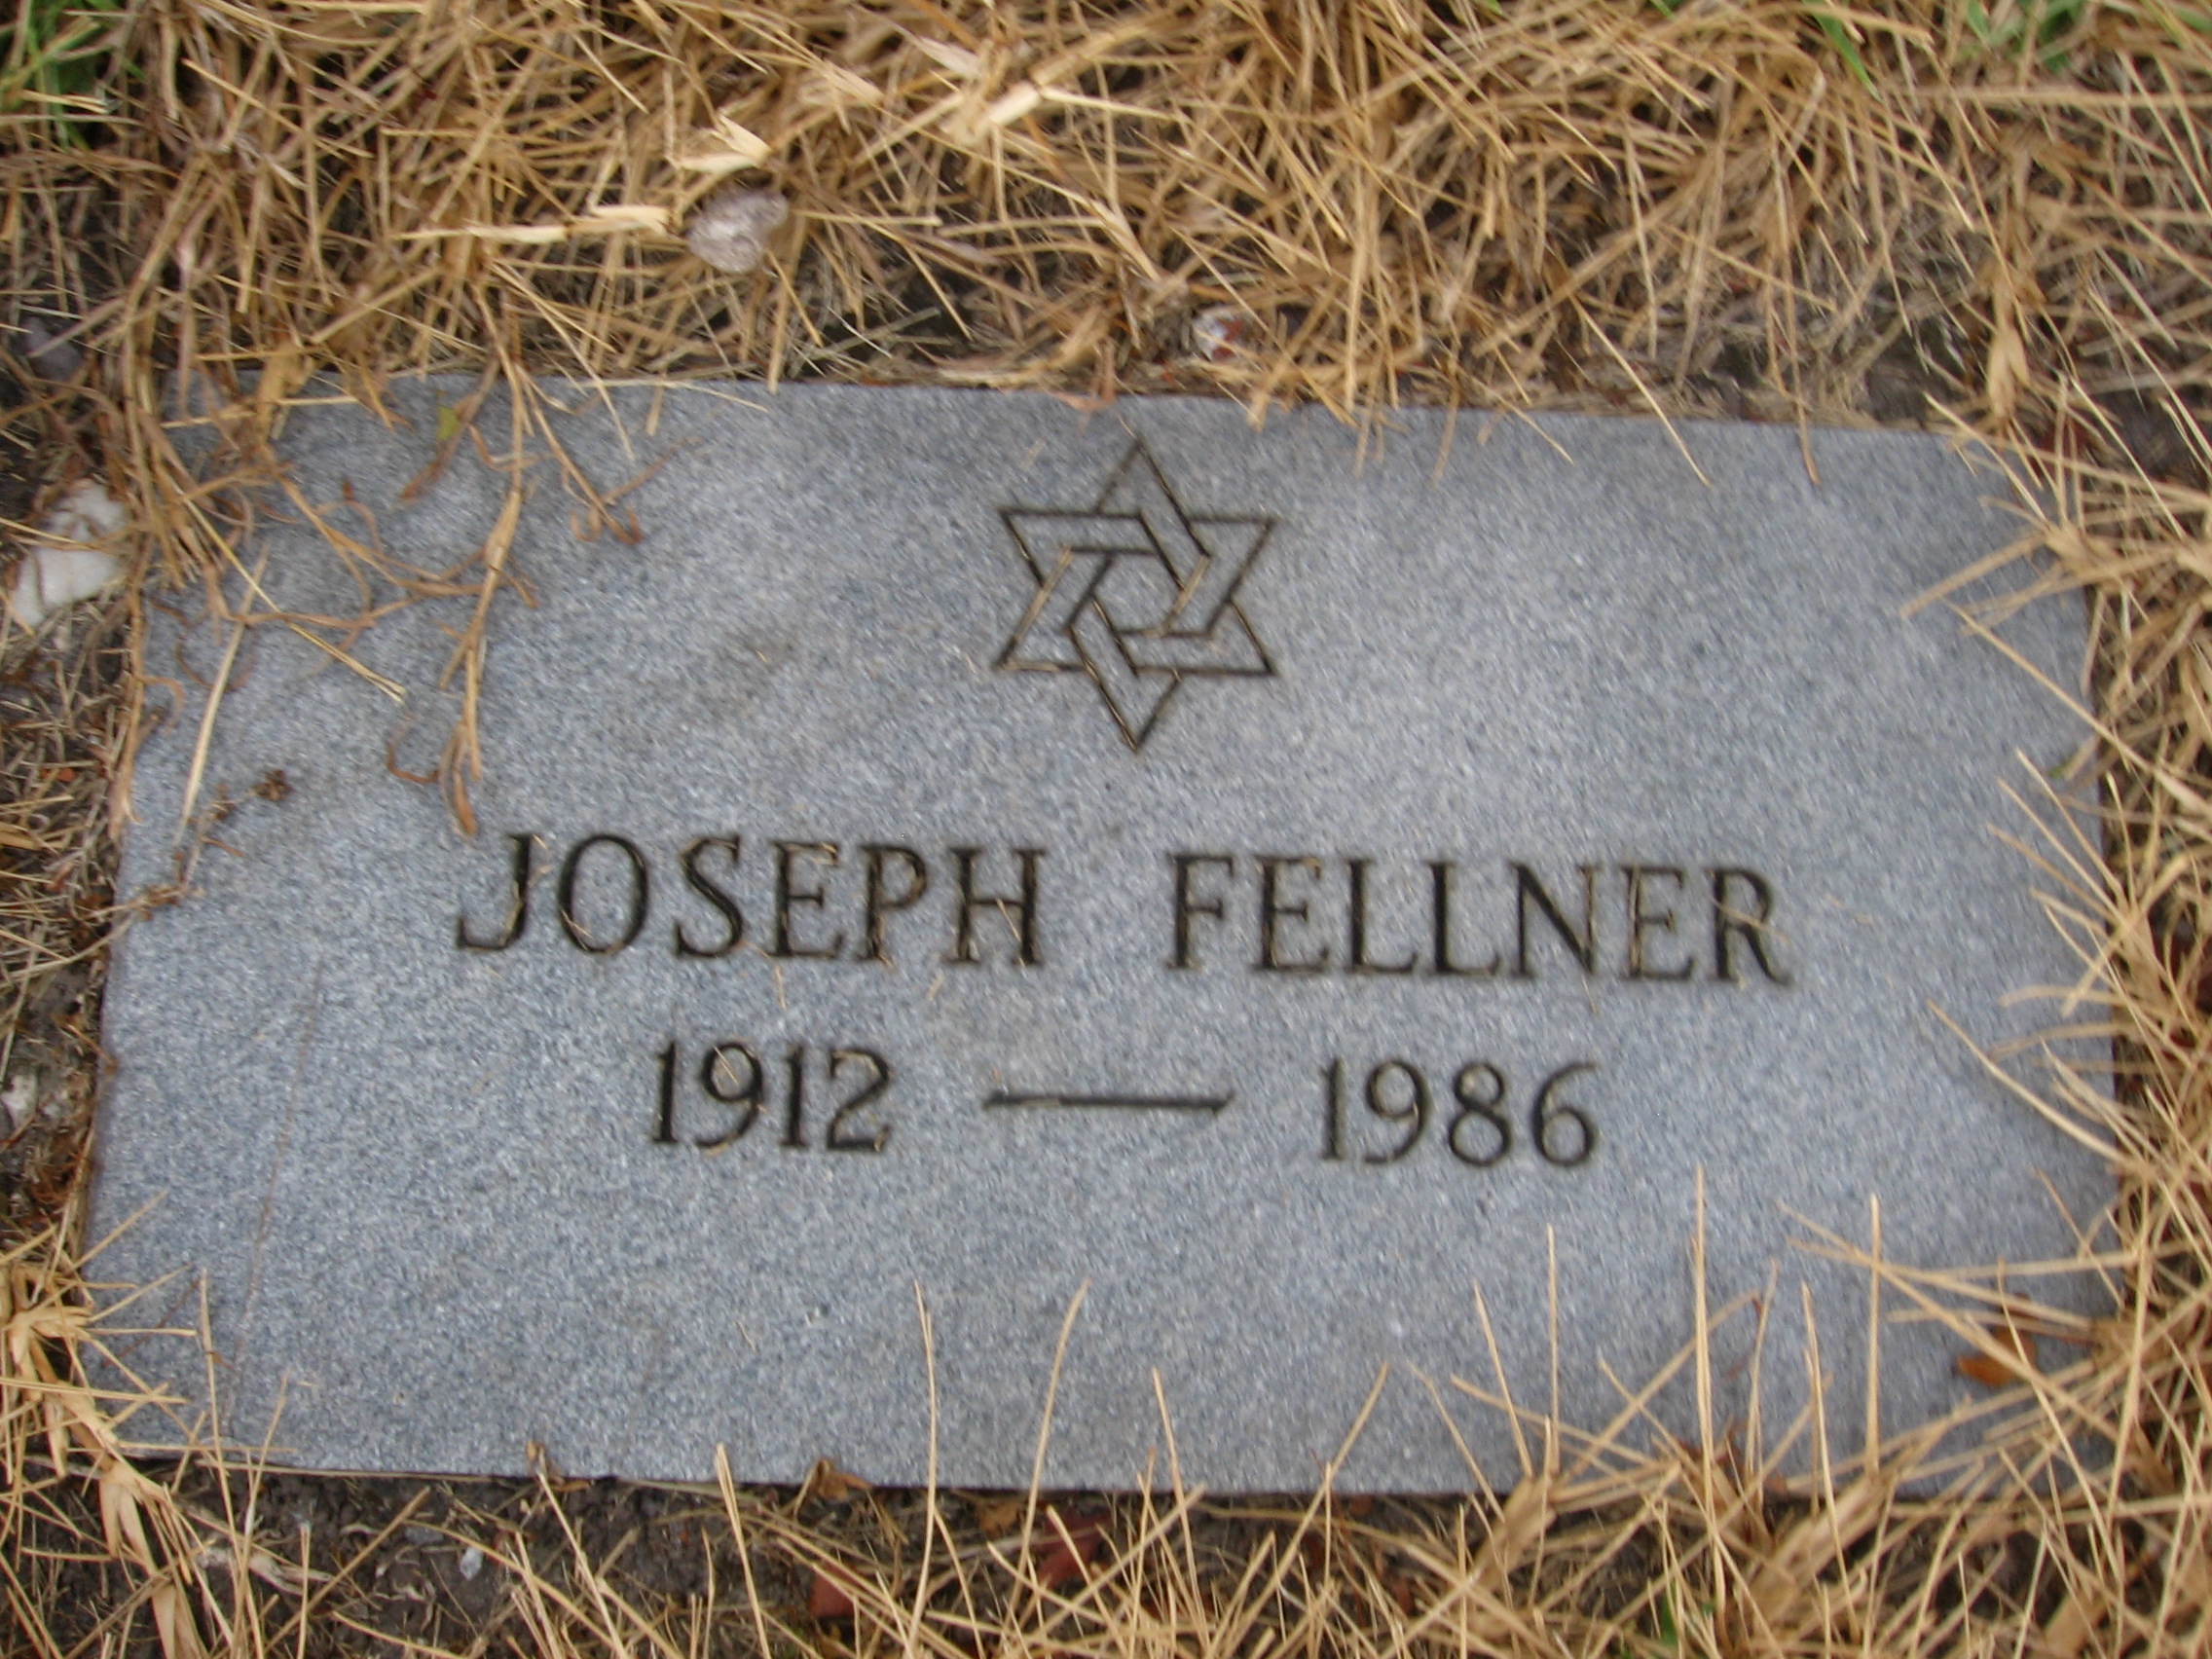 Joseph Fellner